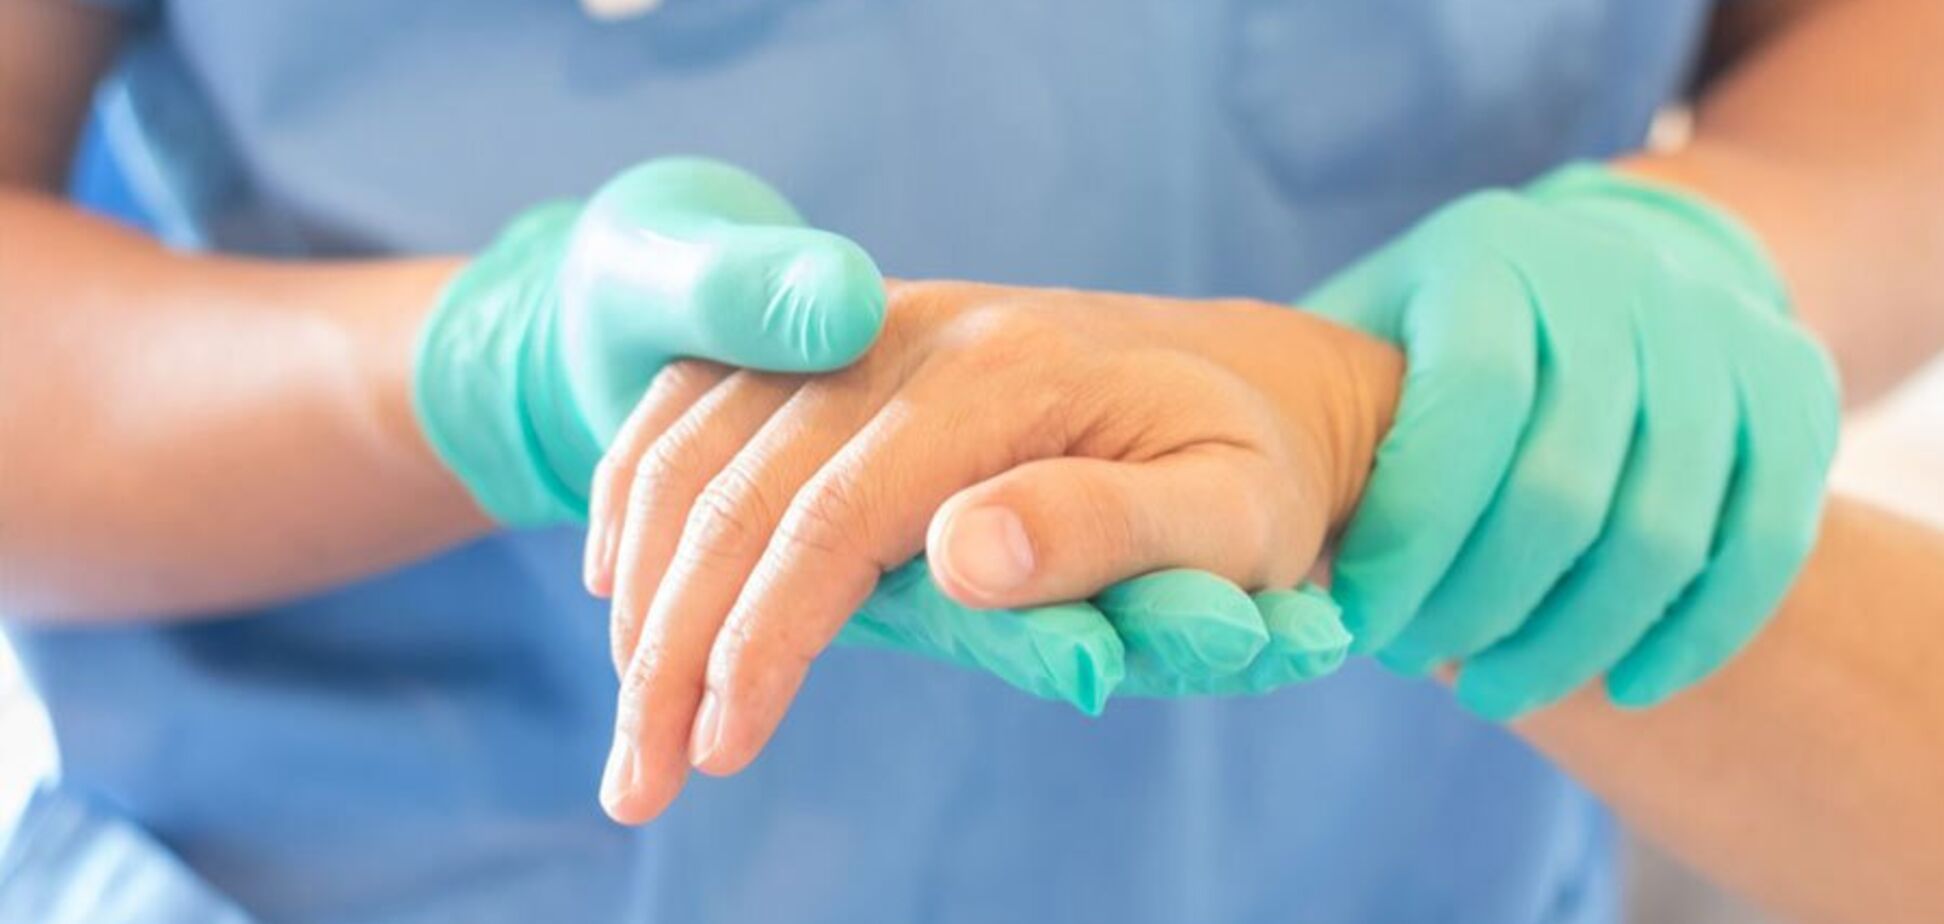 Современная микрохирургия – эффективный метод коррекции в ортопедии